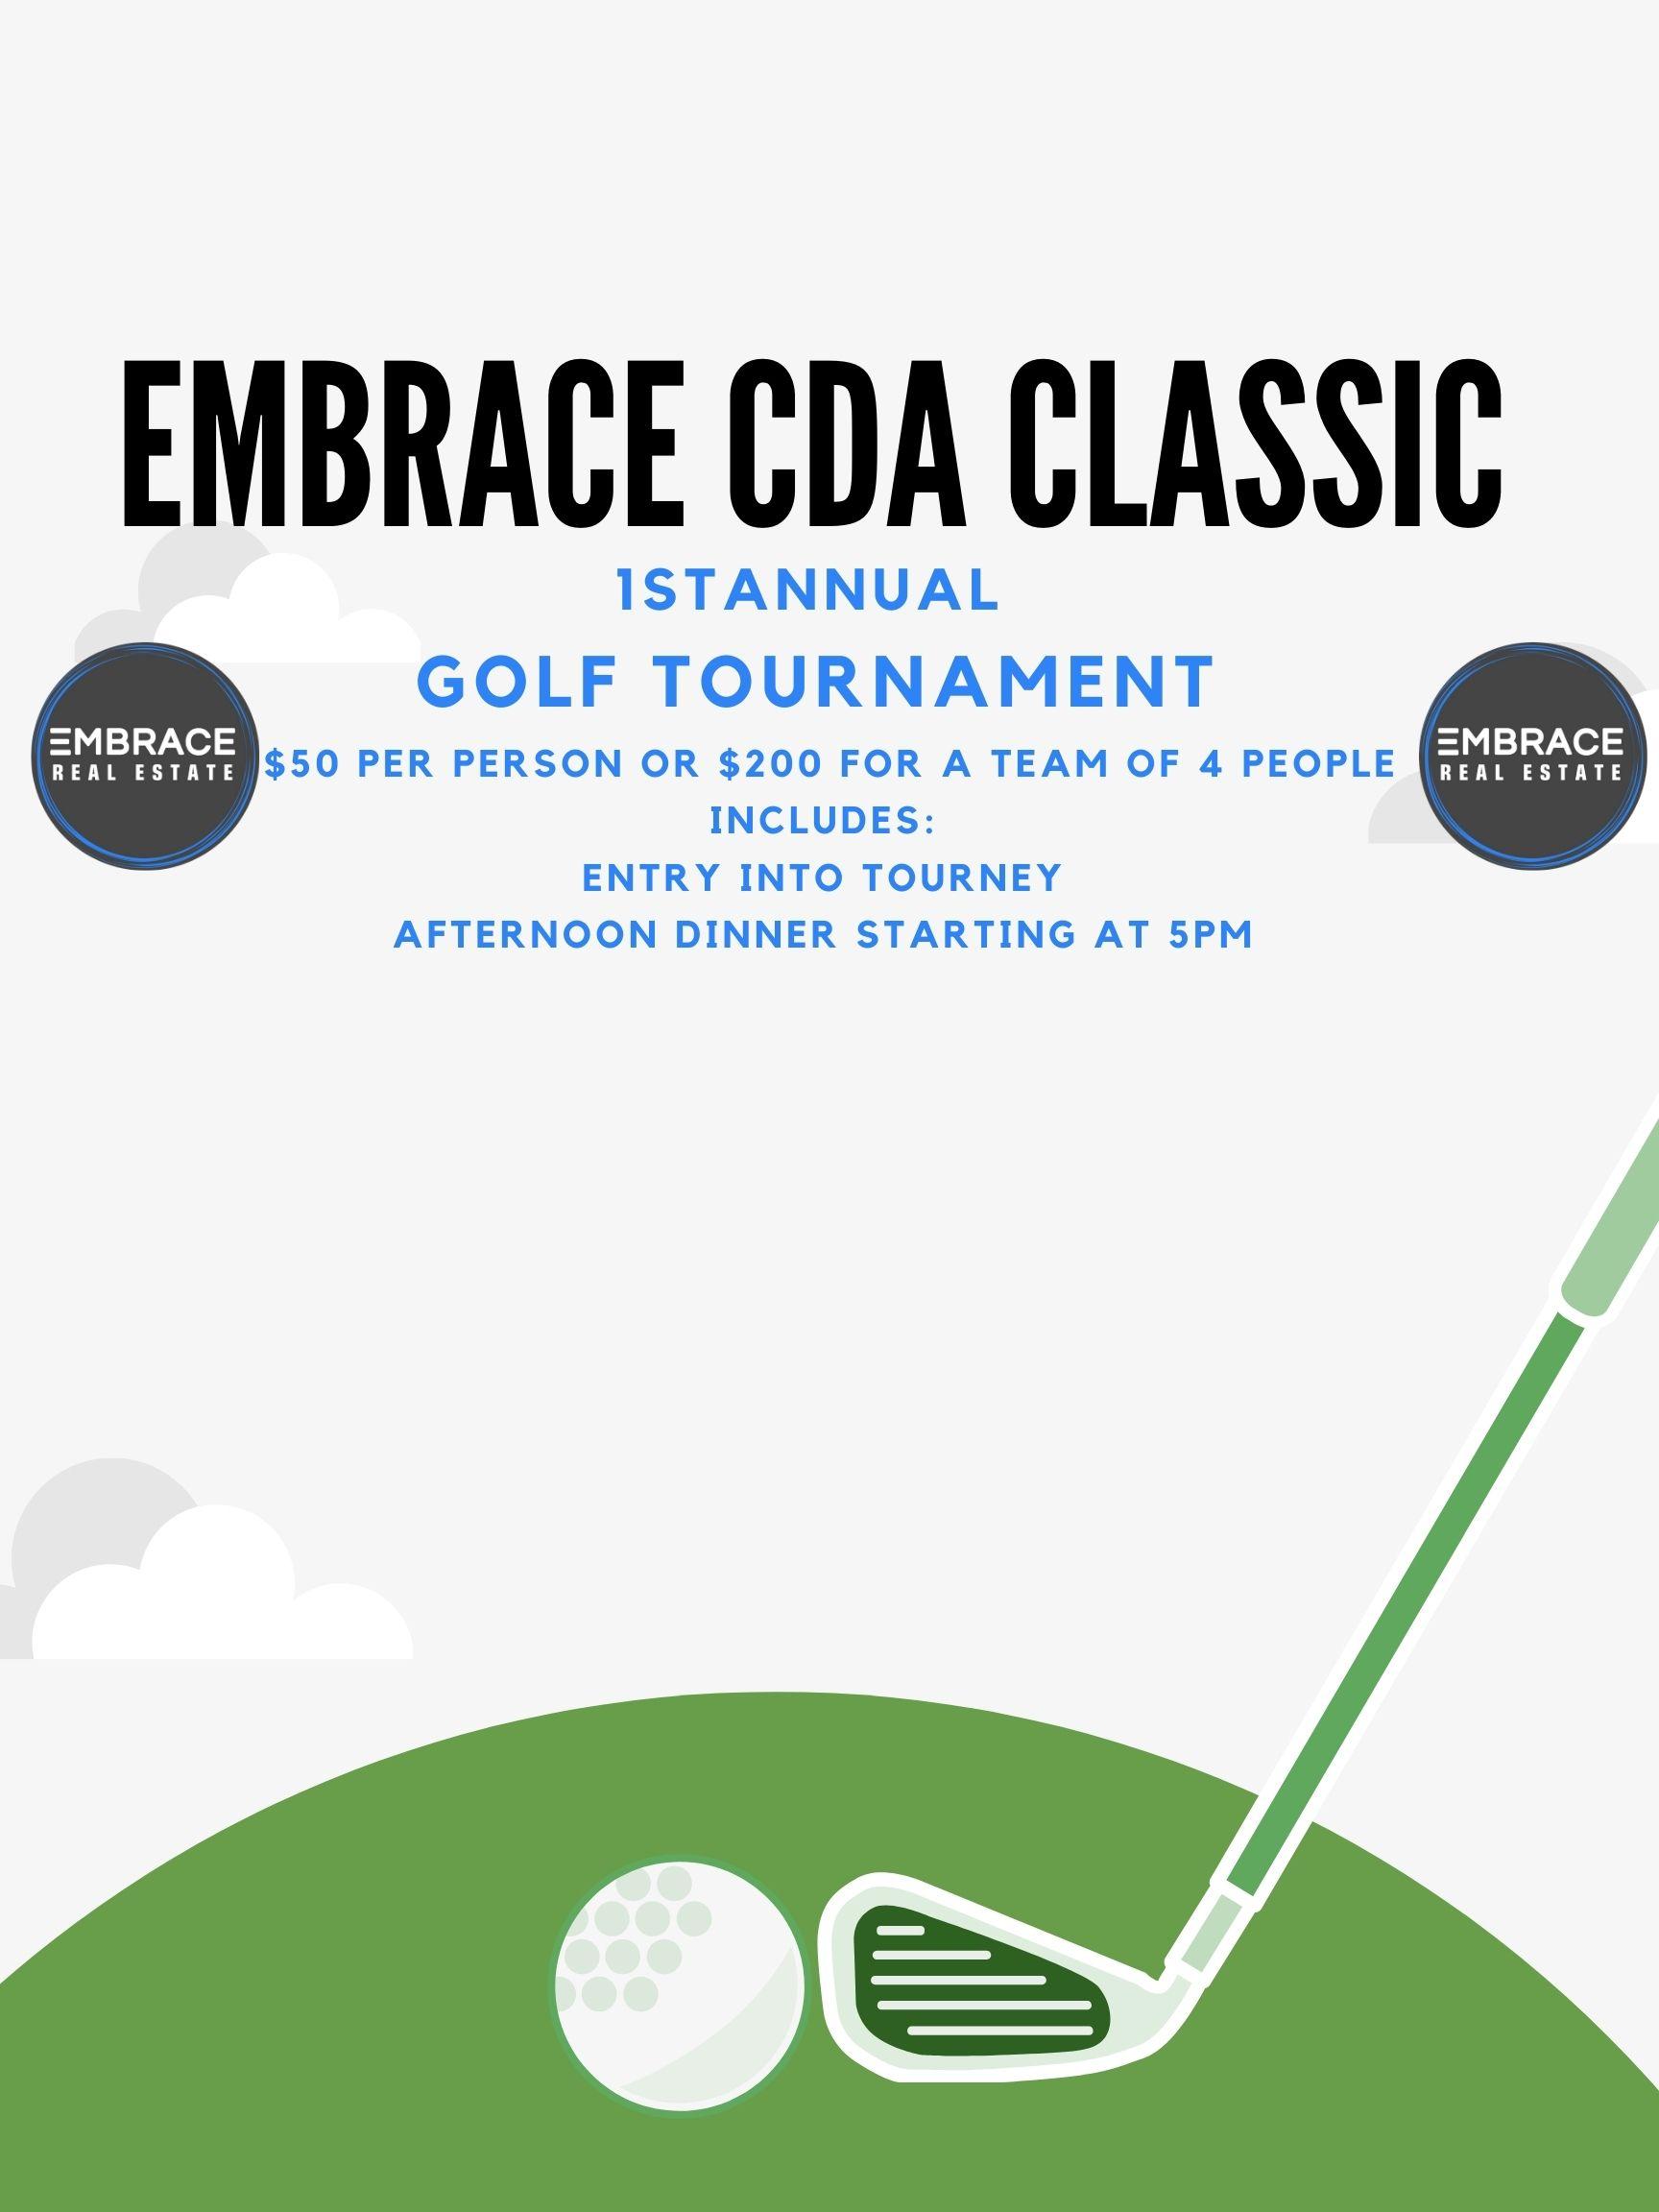 Embrace CDA Classic Golf Tournament